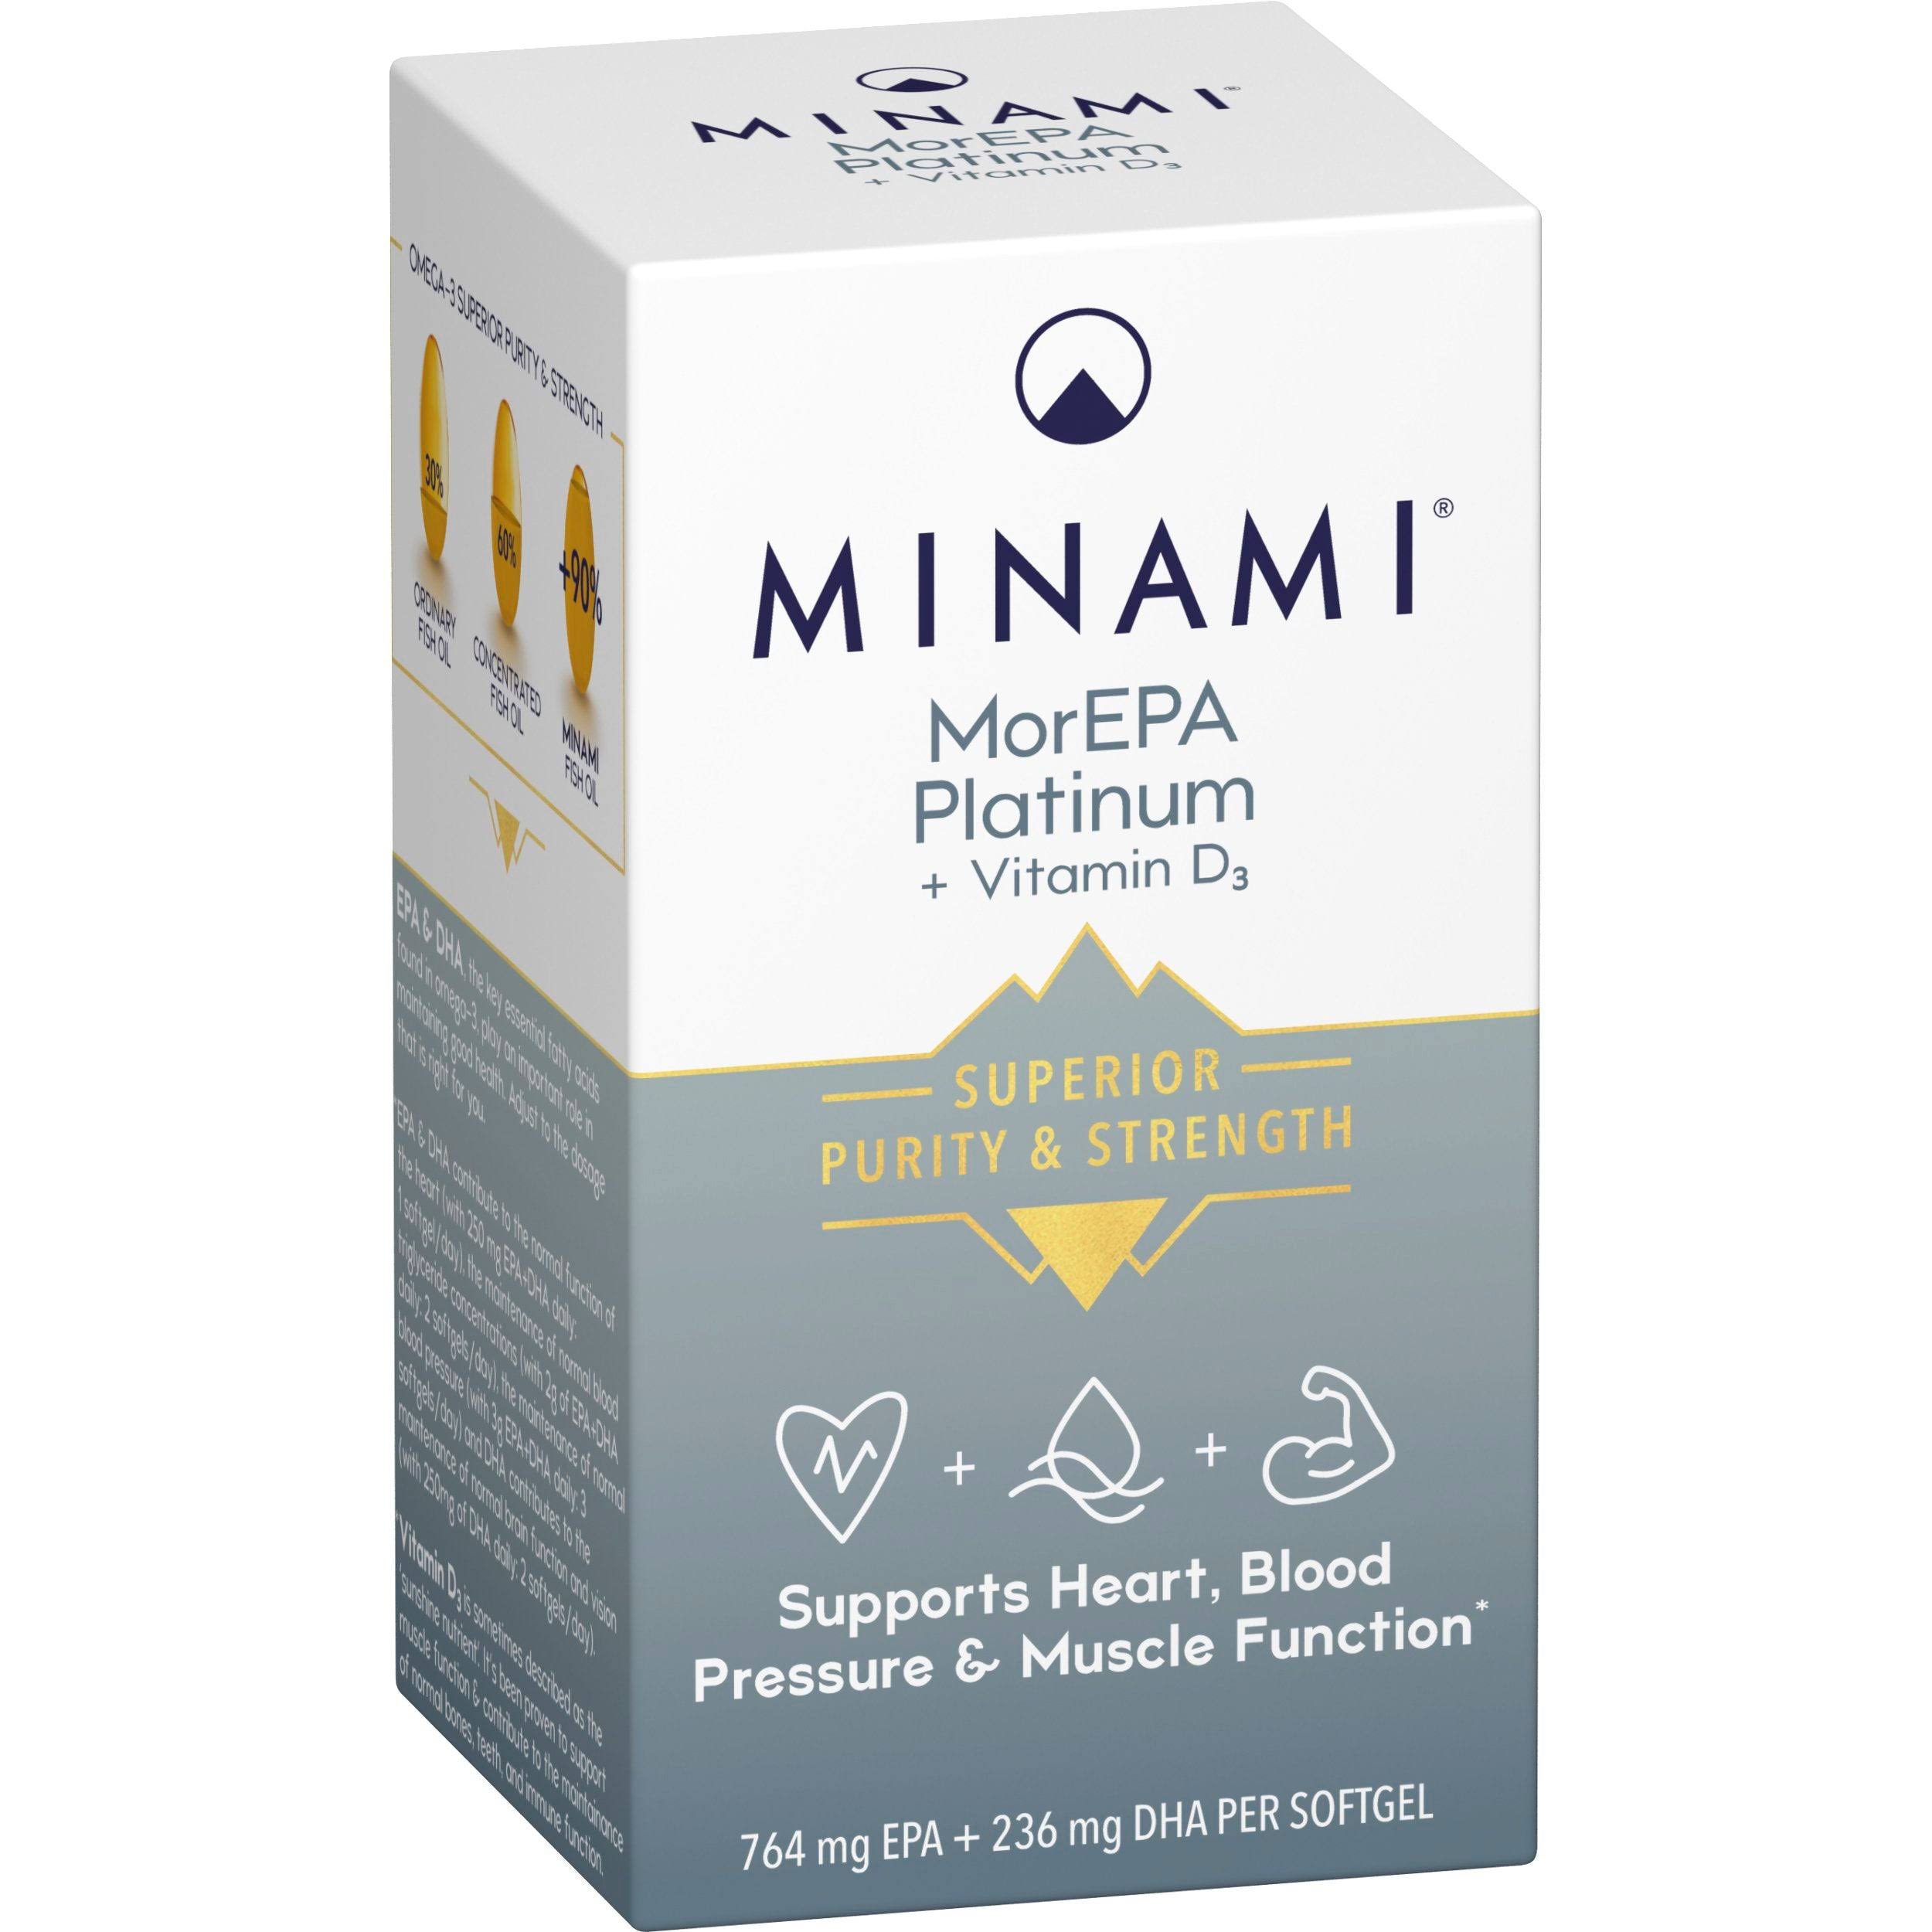 Minami MorEPA Platinum Smart Fats 90 Percent Omega-3 Plus 25mcg Vitamin D3 - 60ct